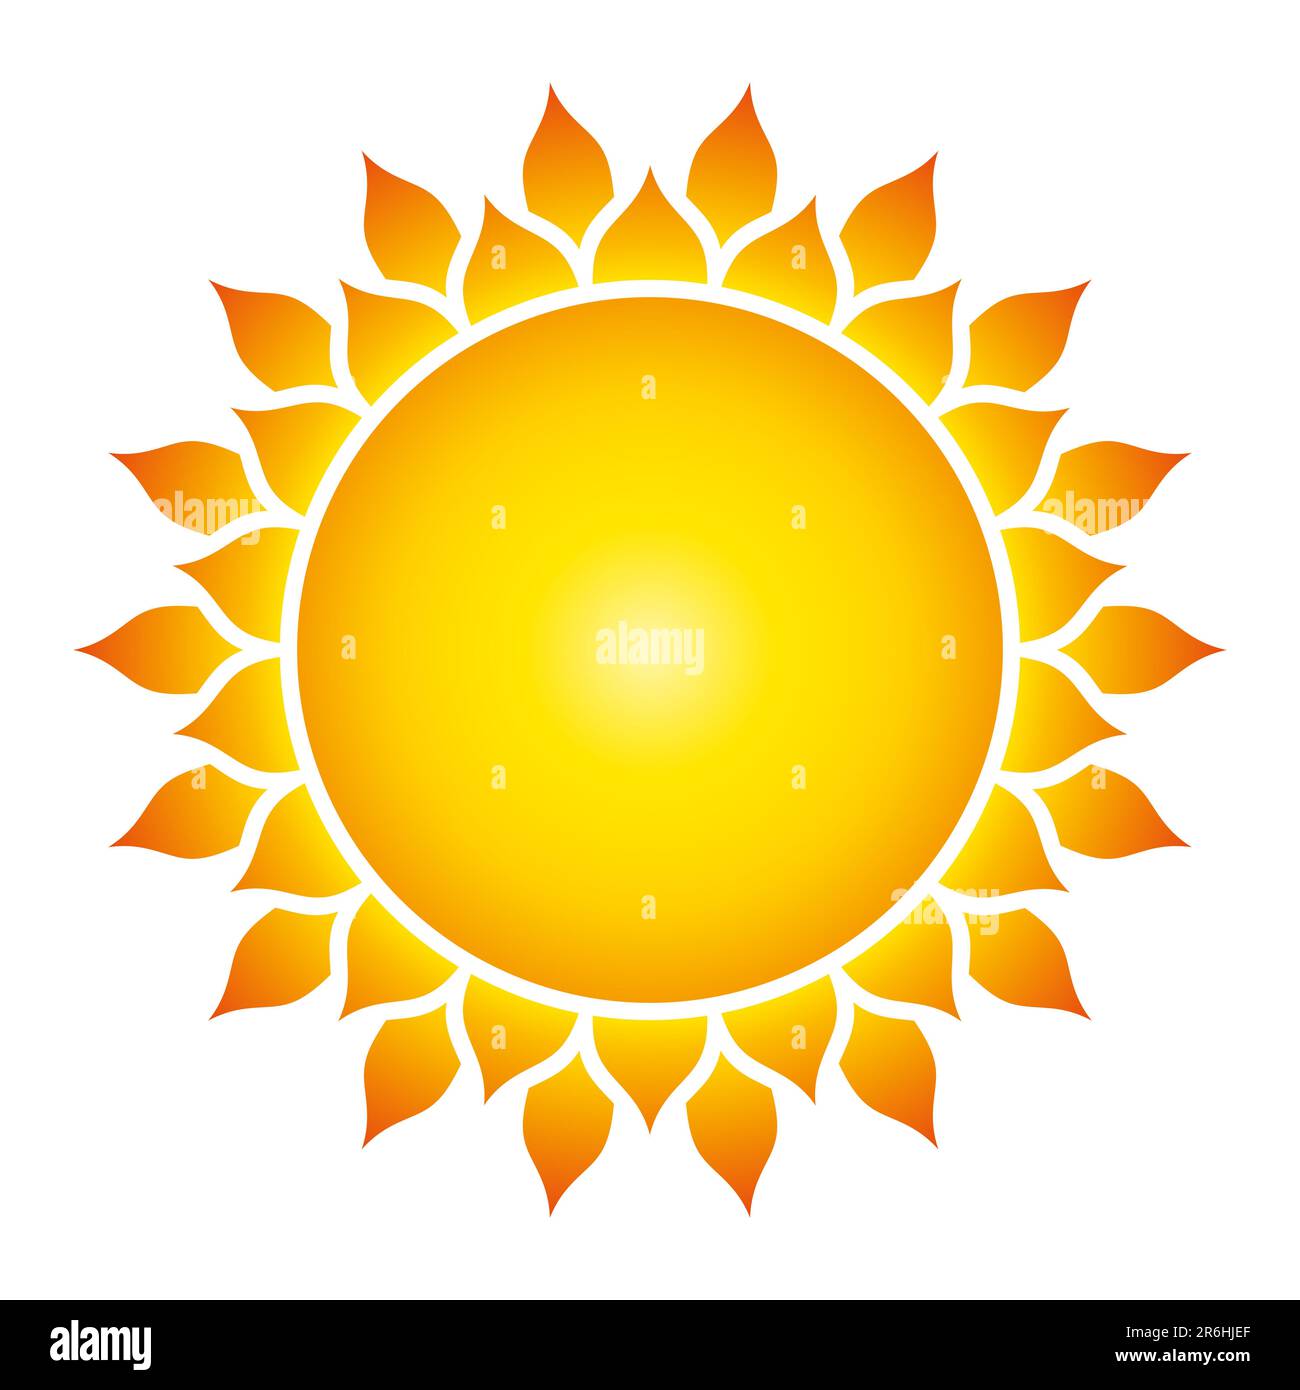 Sonnensymbol und Solarscheibe mit 36 Flammen. Leuchtendes, farbenfrohes und goldenes Muster in Sonnenblumenoptik. Heilige Geometrie, modelliert nach einem Kreismuster. Stockfoto